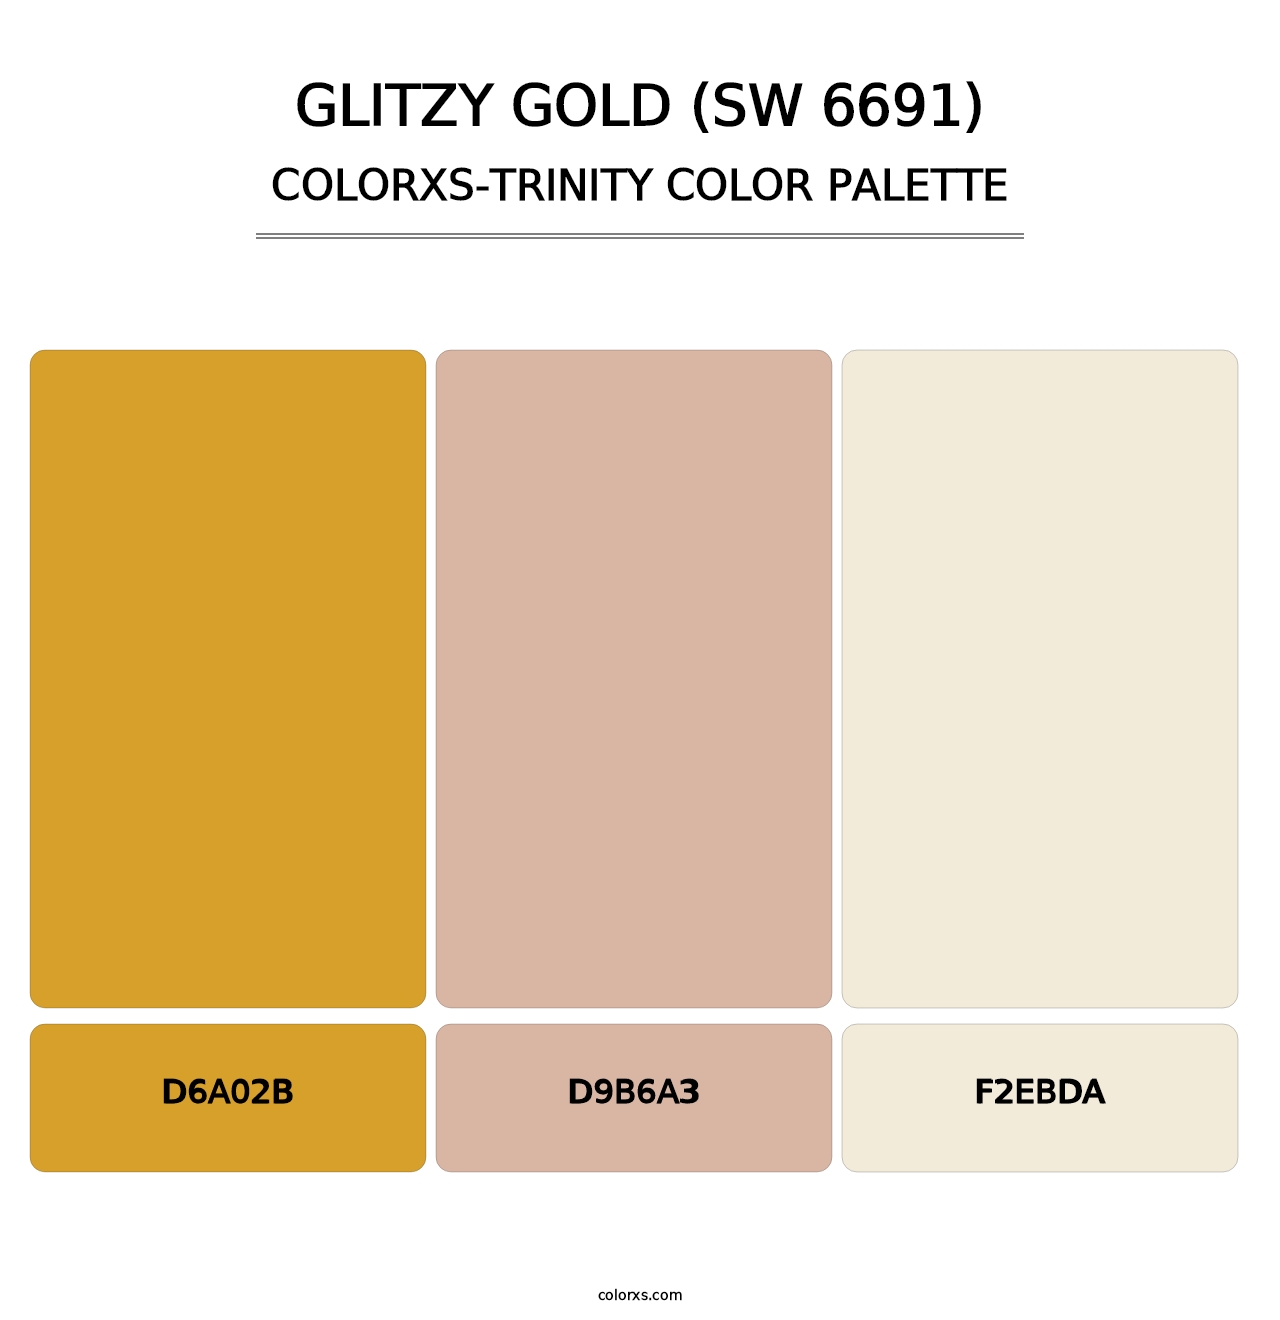 Glitzy Gold (SW 6691) - Colorxs Trinity Palette